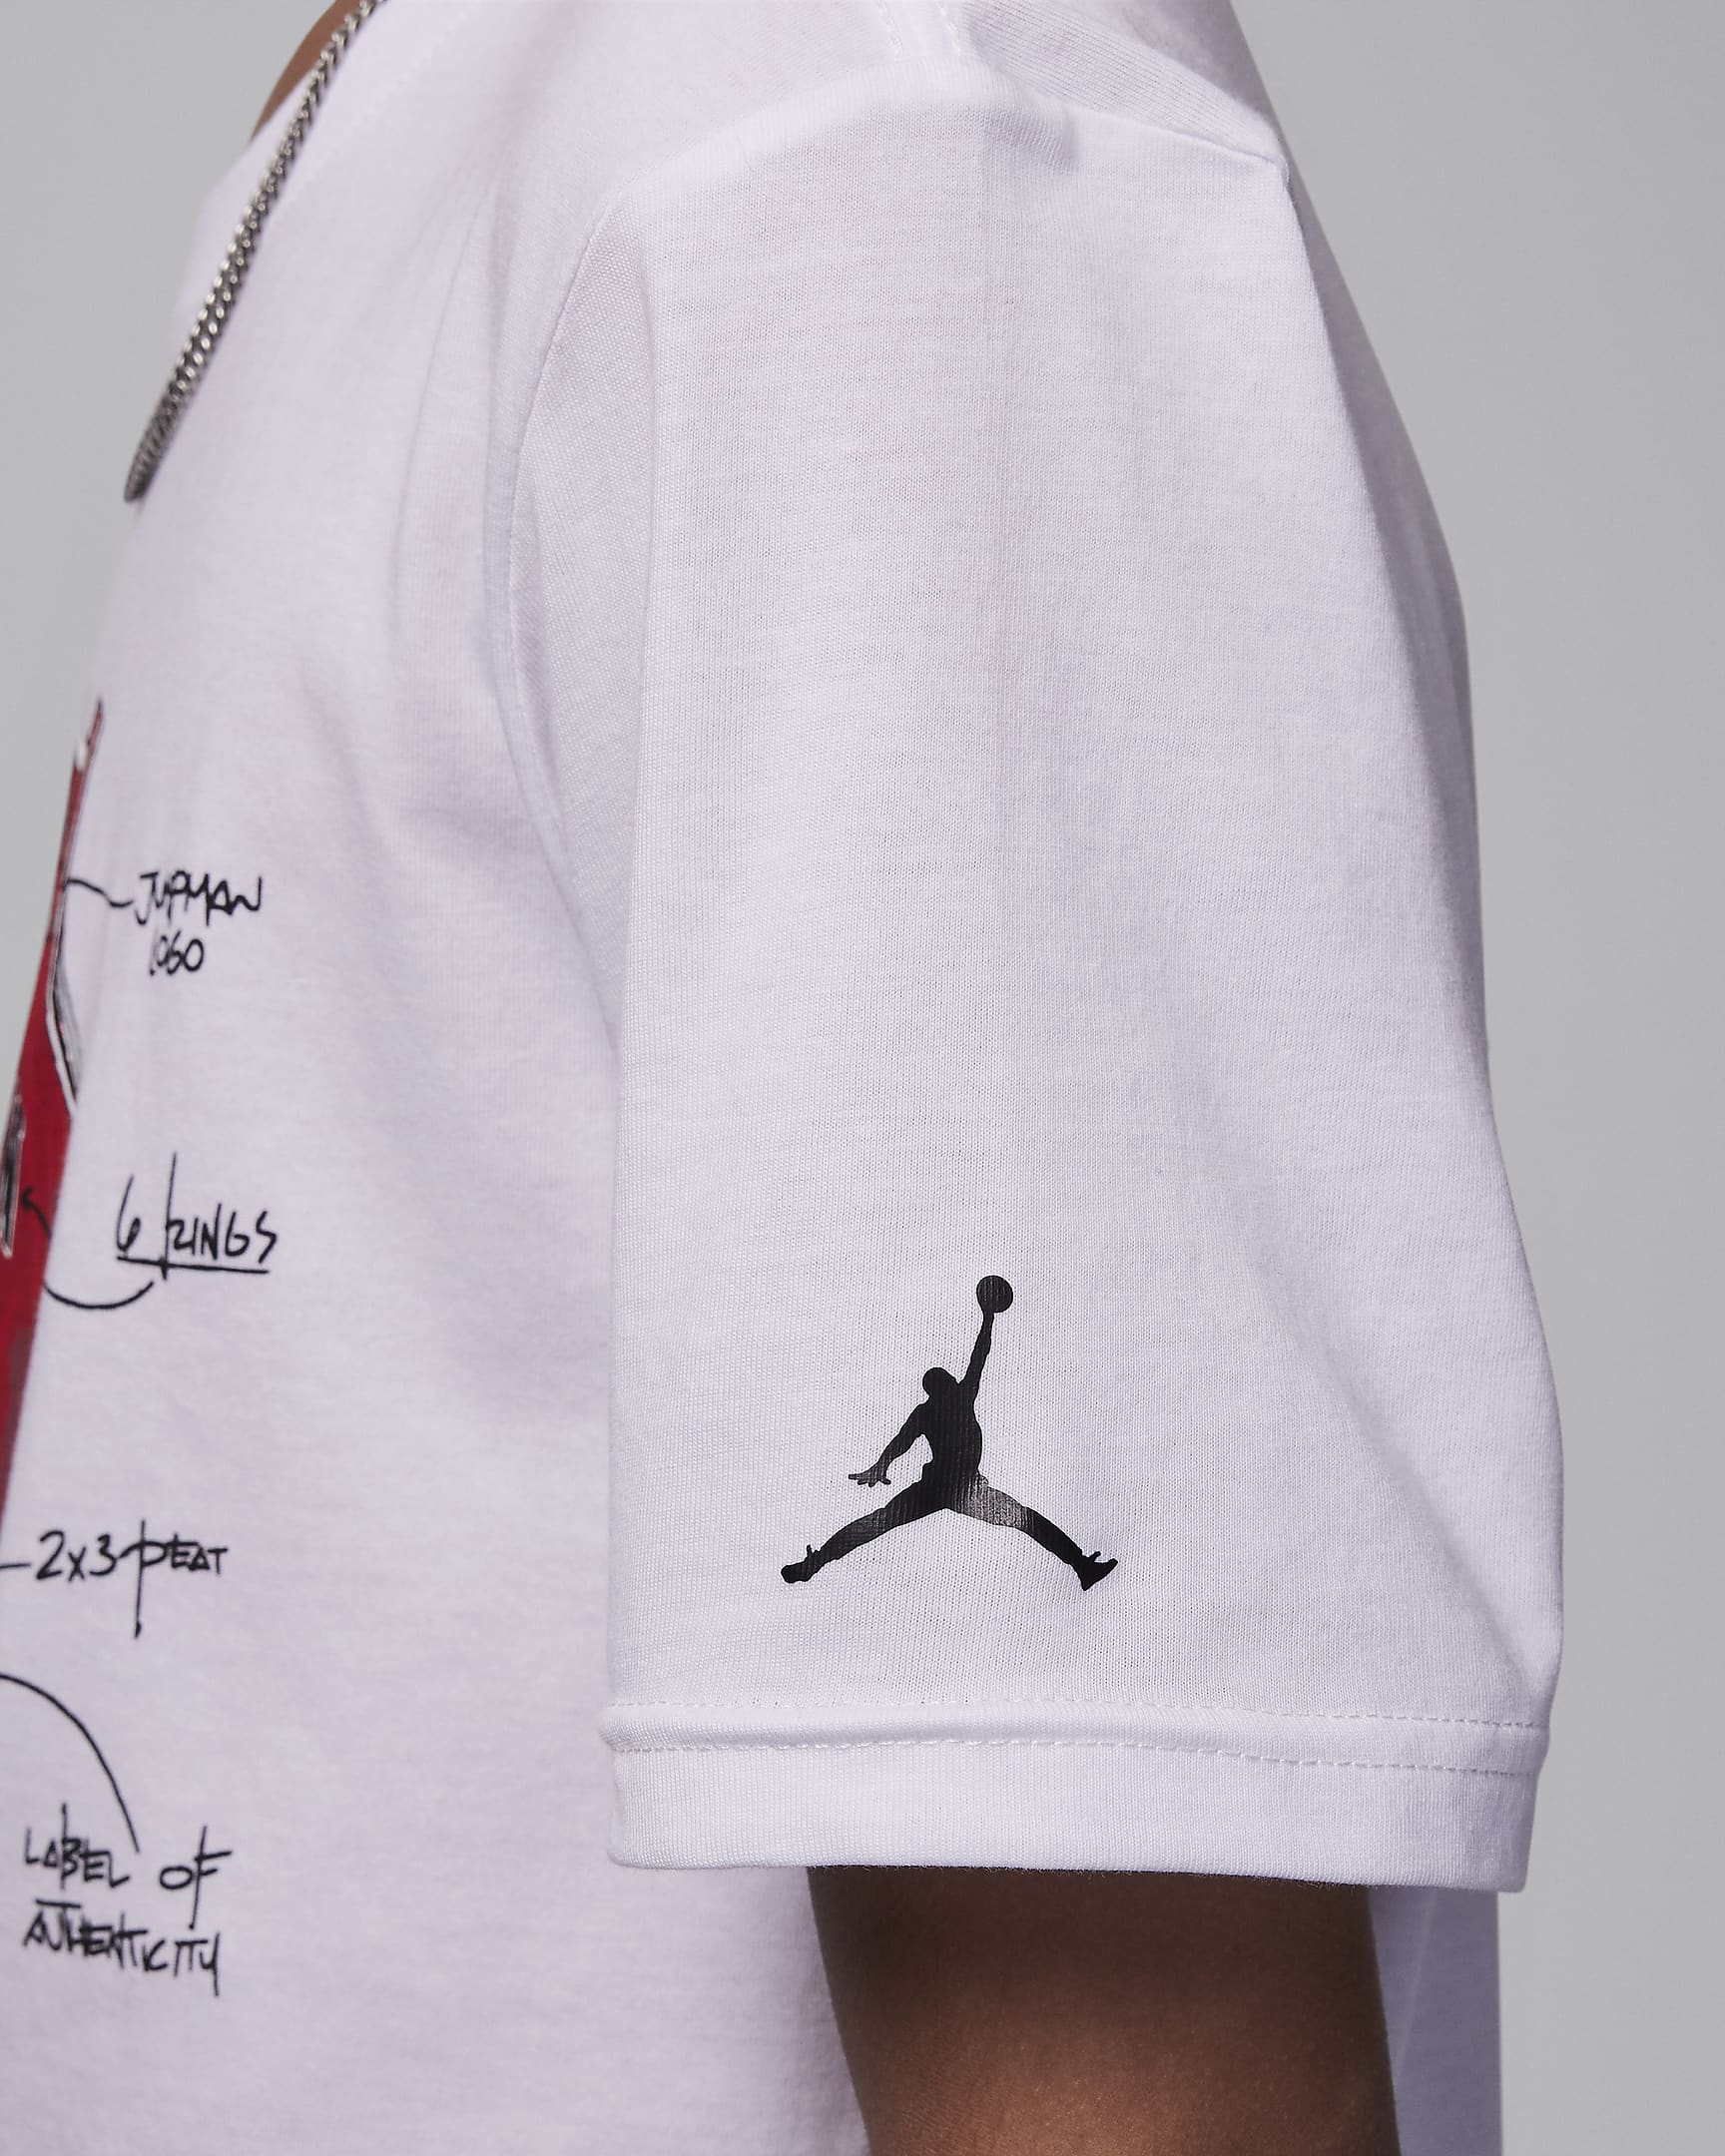 Jordan Big Kids' Graphic T-Shirt. Nike JP